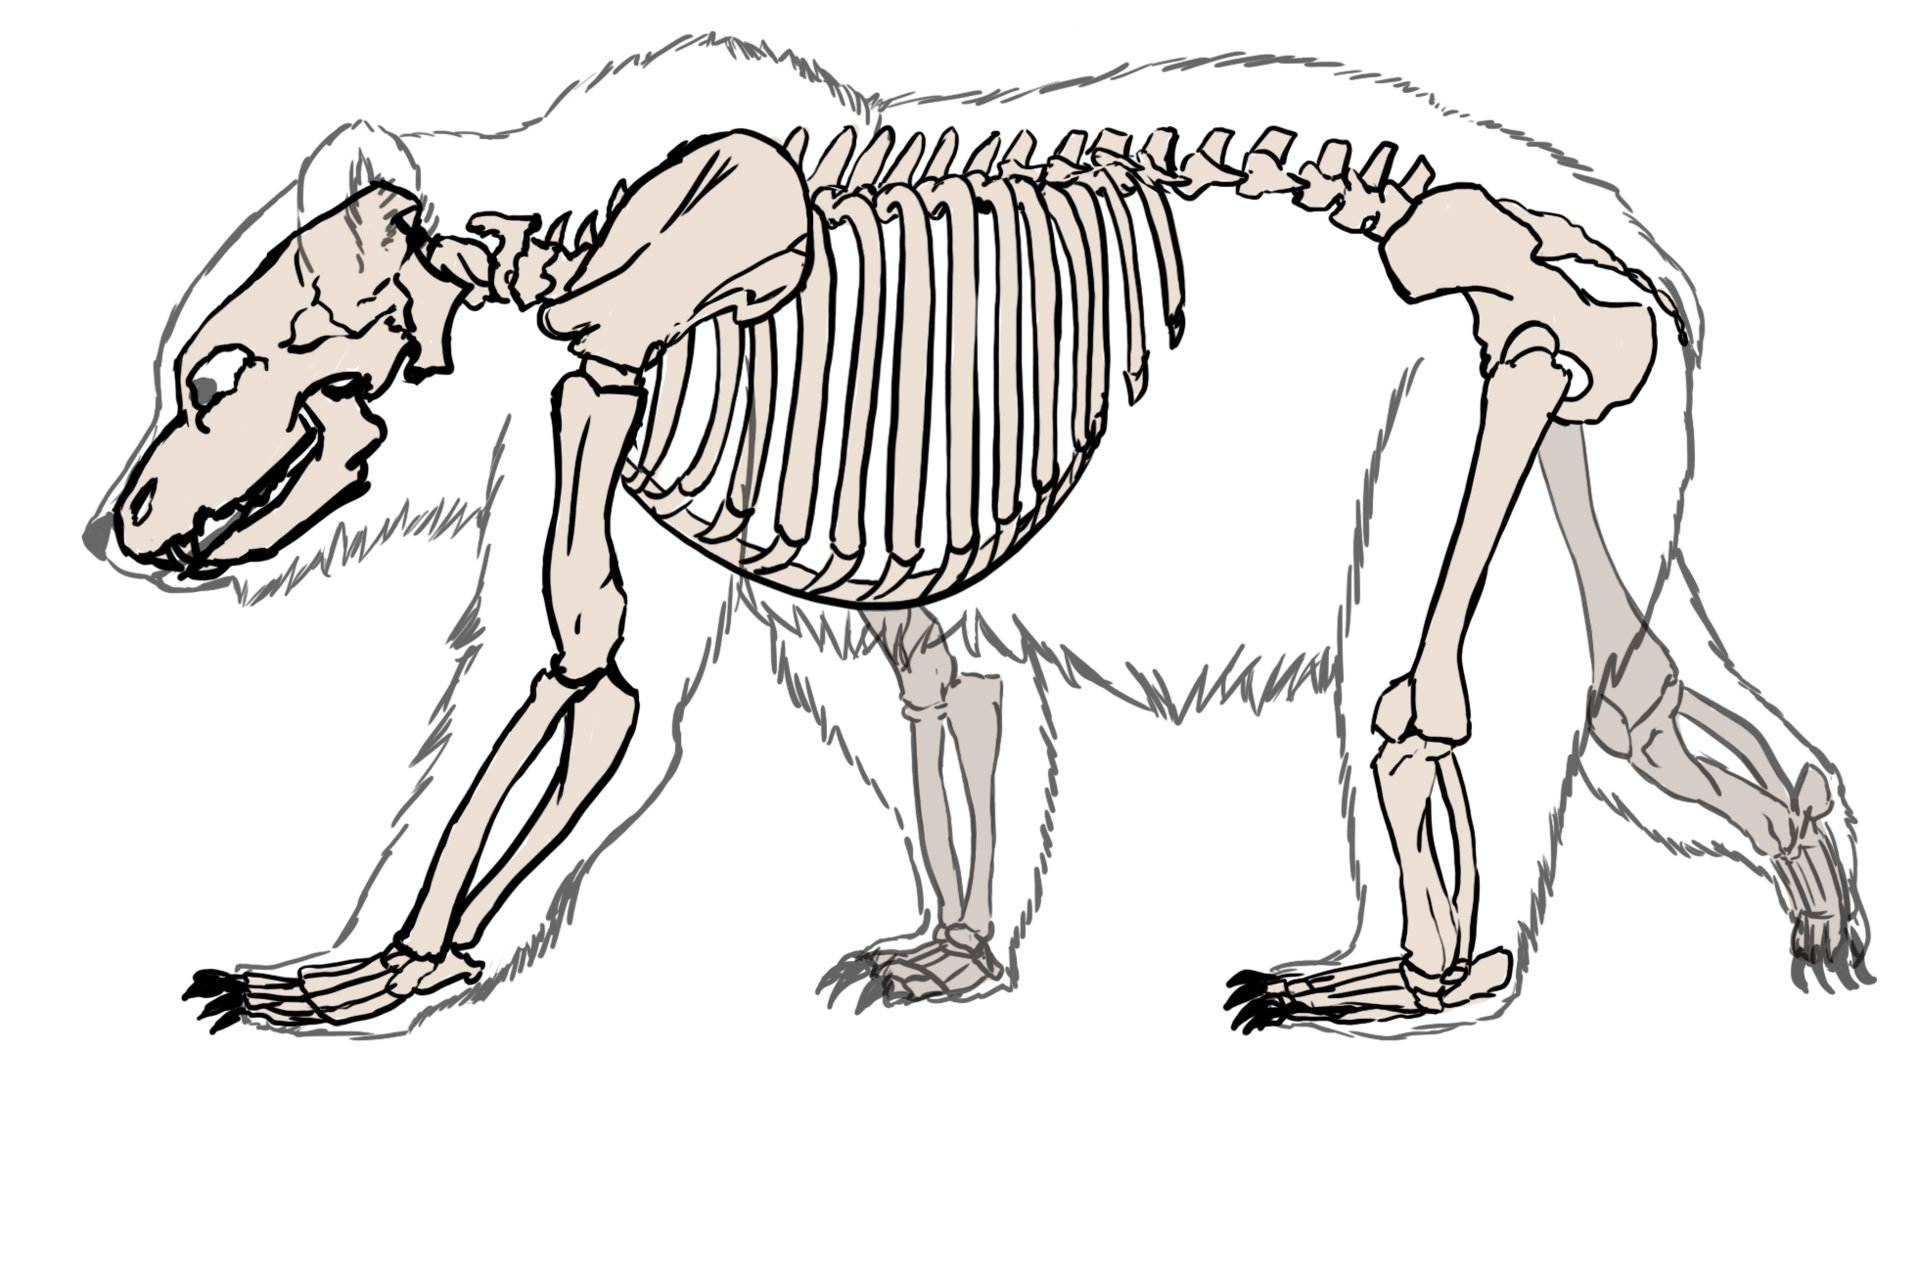 ArtStation - Bear Skeleton Illustration, Kieran Polaris